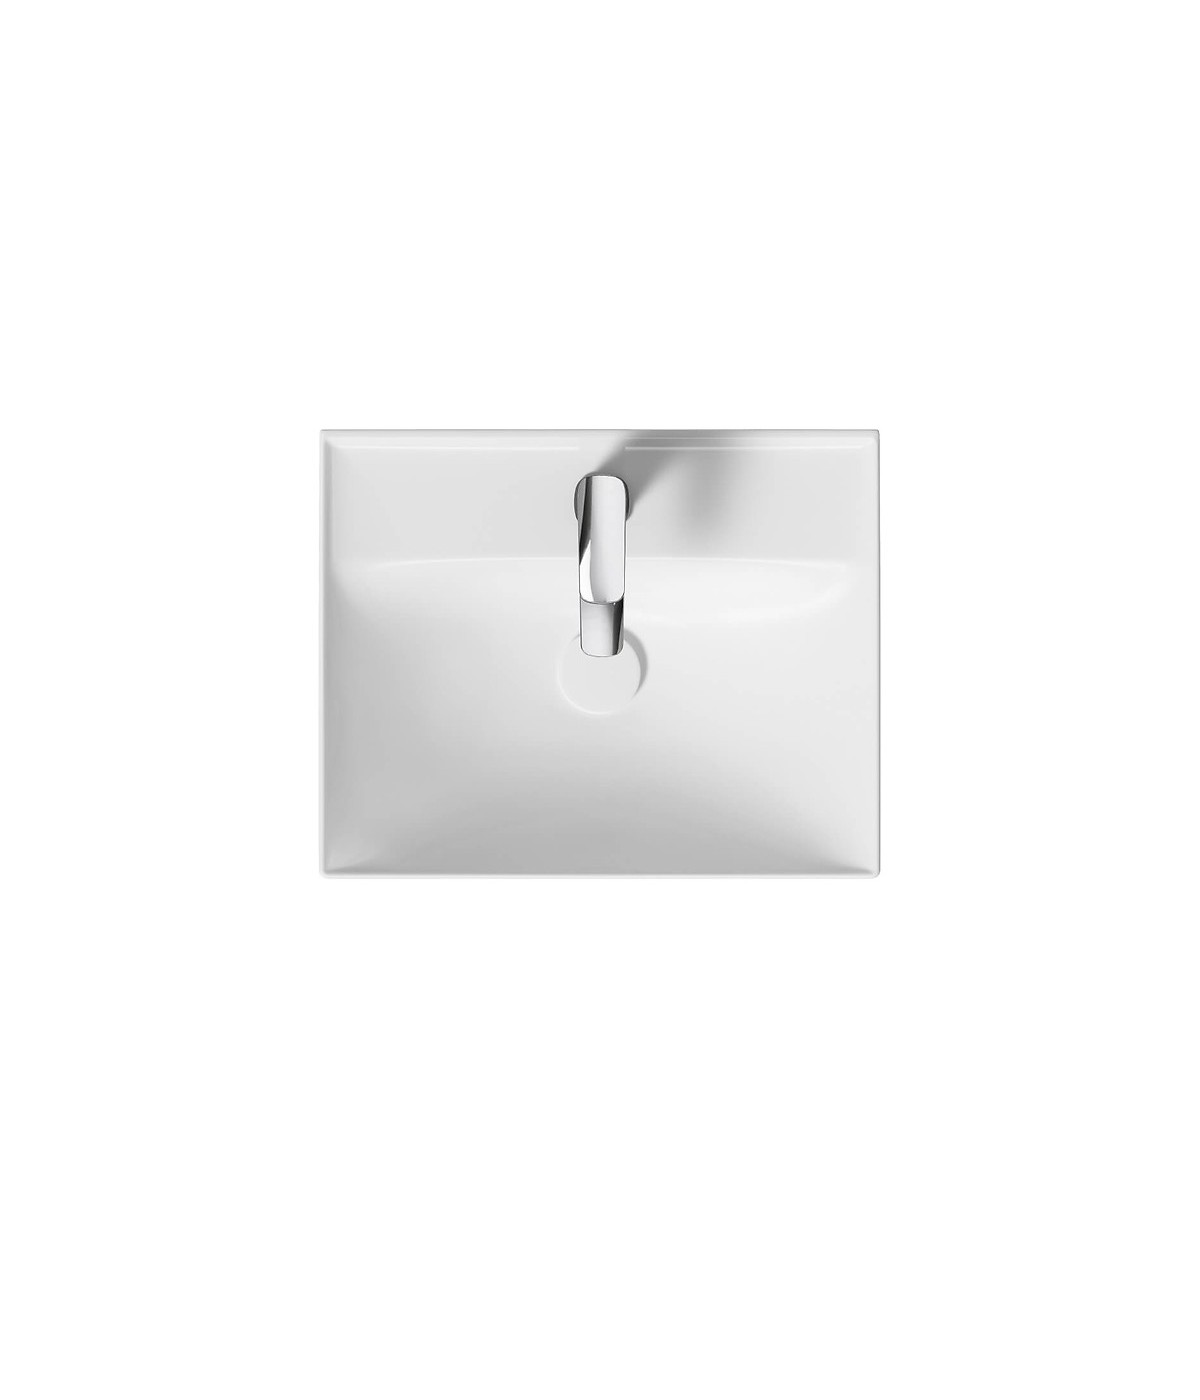 Badmöbel Set LARGA 50 Waschbecken-Unterschrank mit Waschbecken, 2-Schubladen, Weiß, 2x Silber Möbelgriffe